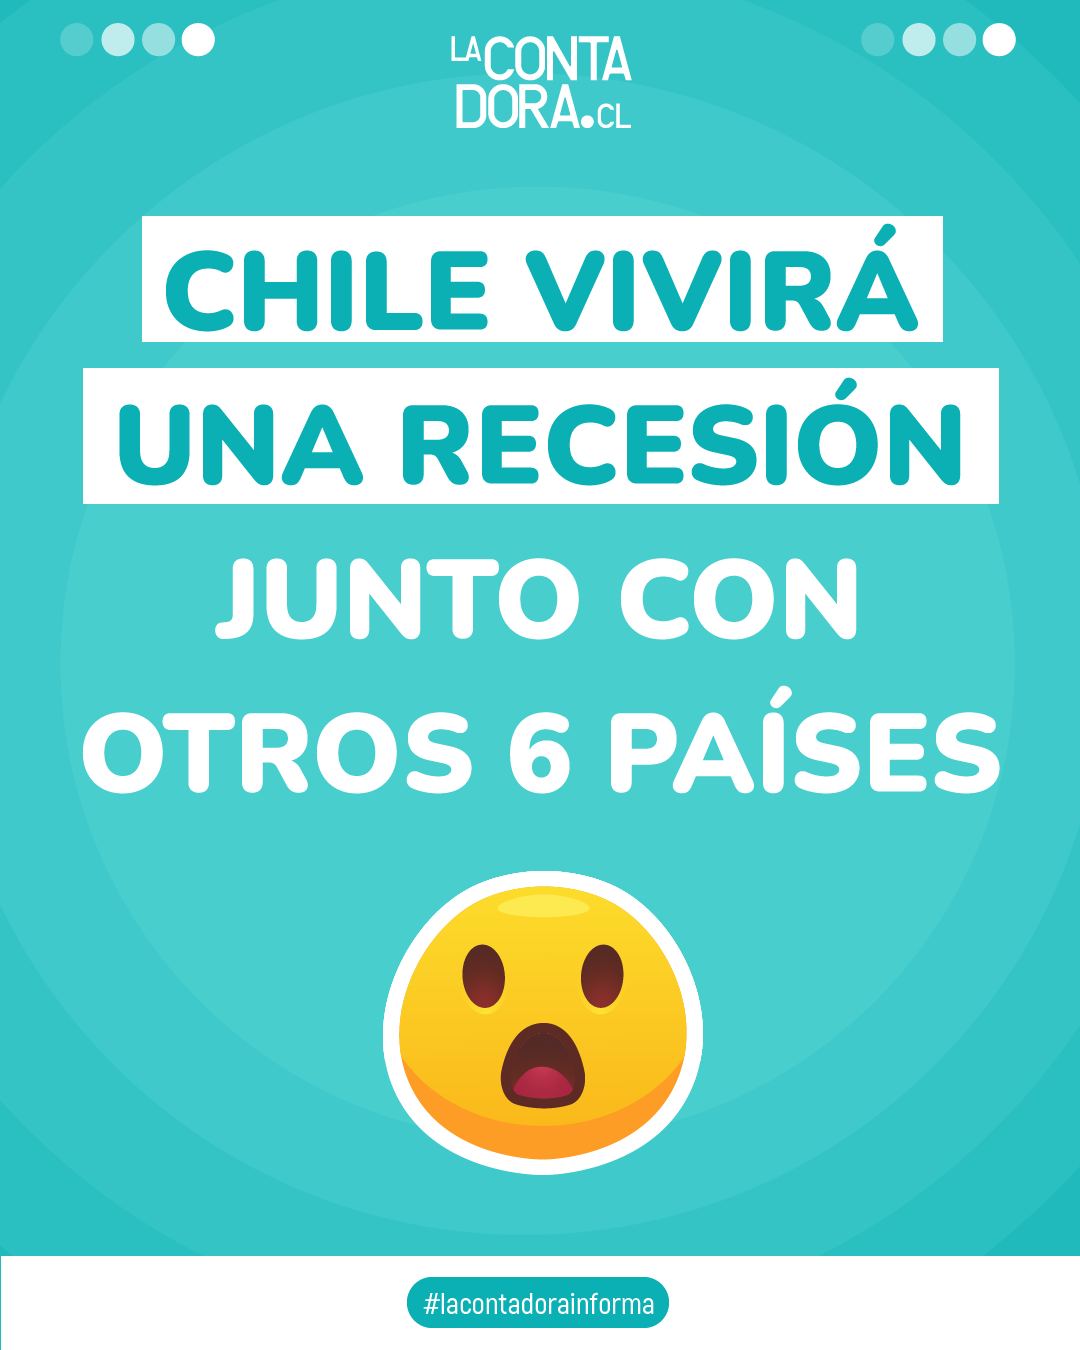 CHILE VIVIRÁ UNA RECESIÓN JUNTO CON OTROS 6 PAÍSES